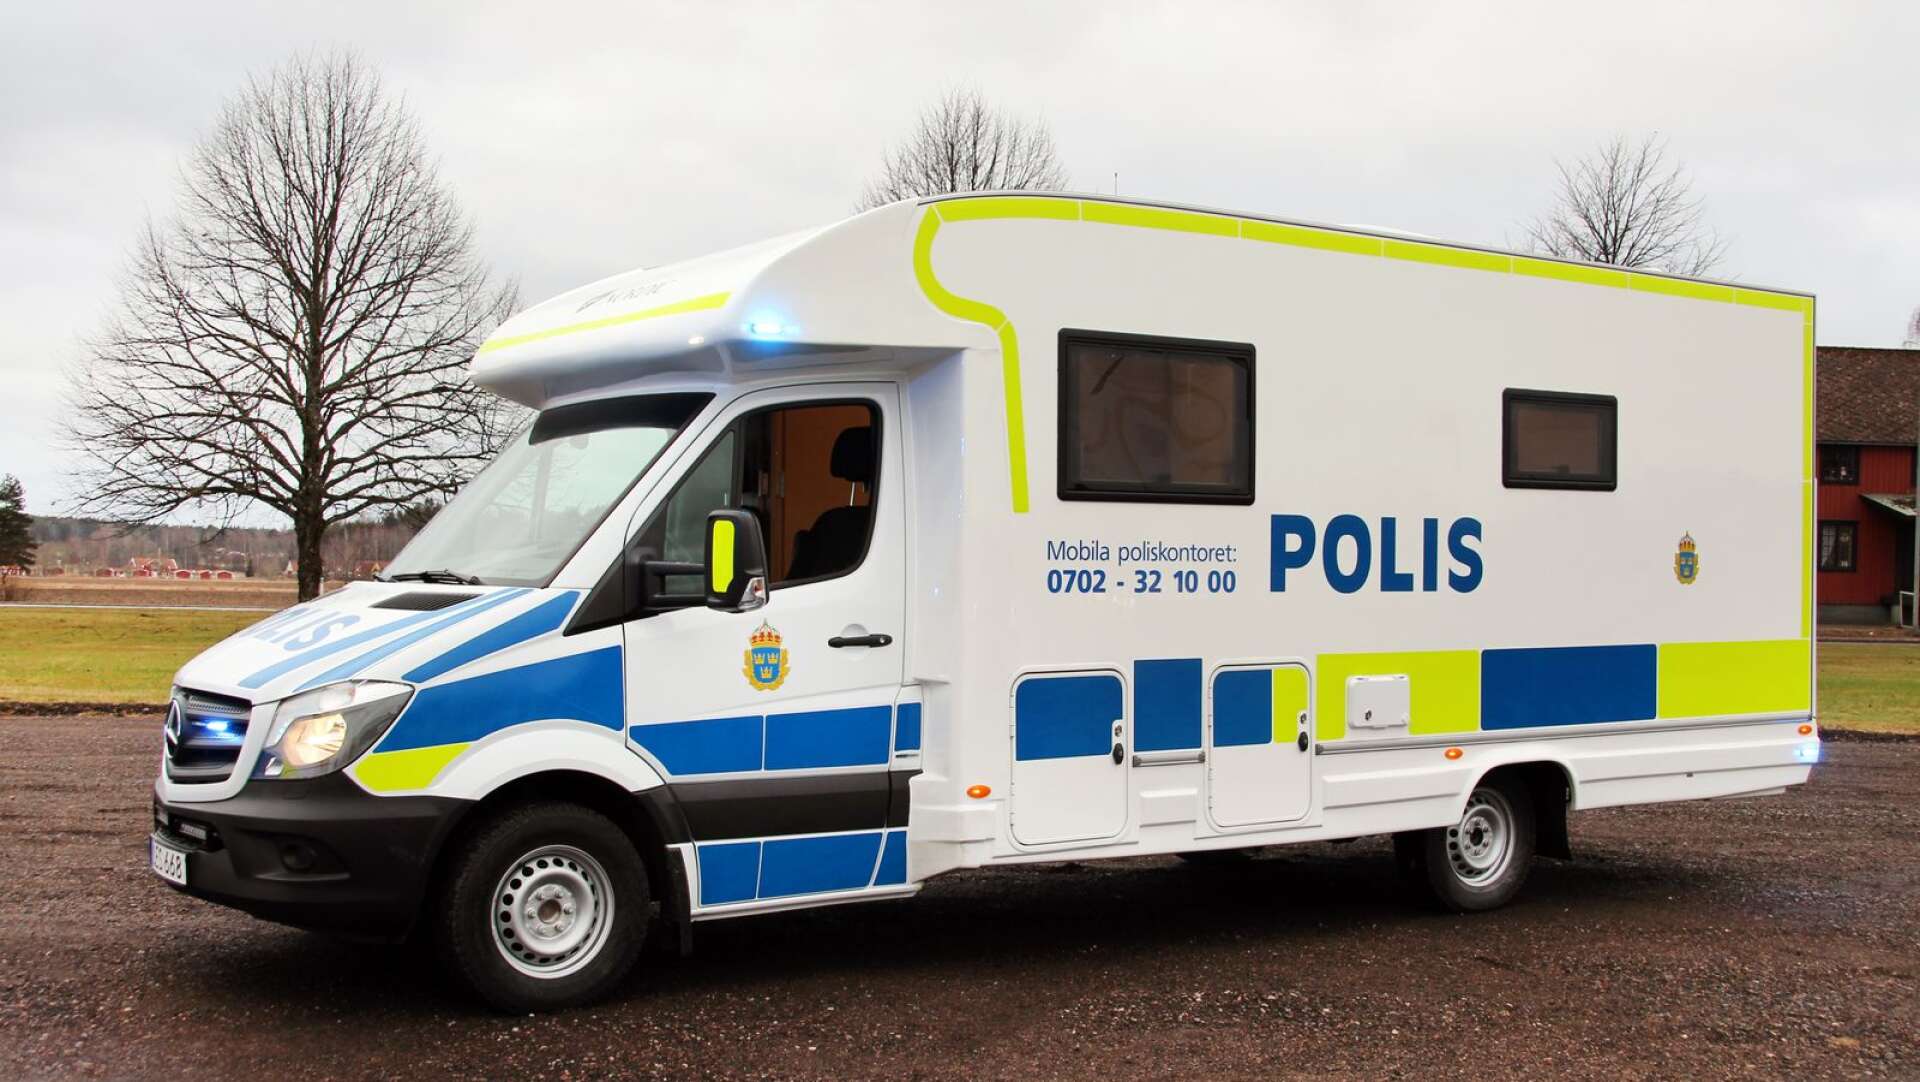 Såhär kommer polishusbilen att se ut. Det här exemplaret rullar på vägarna i en annan del av Sverige.